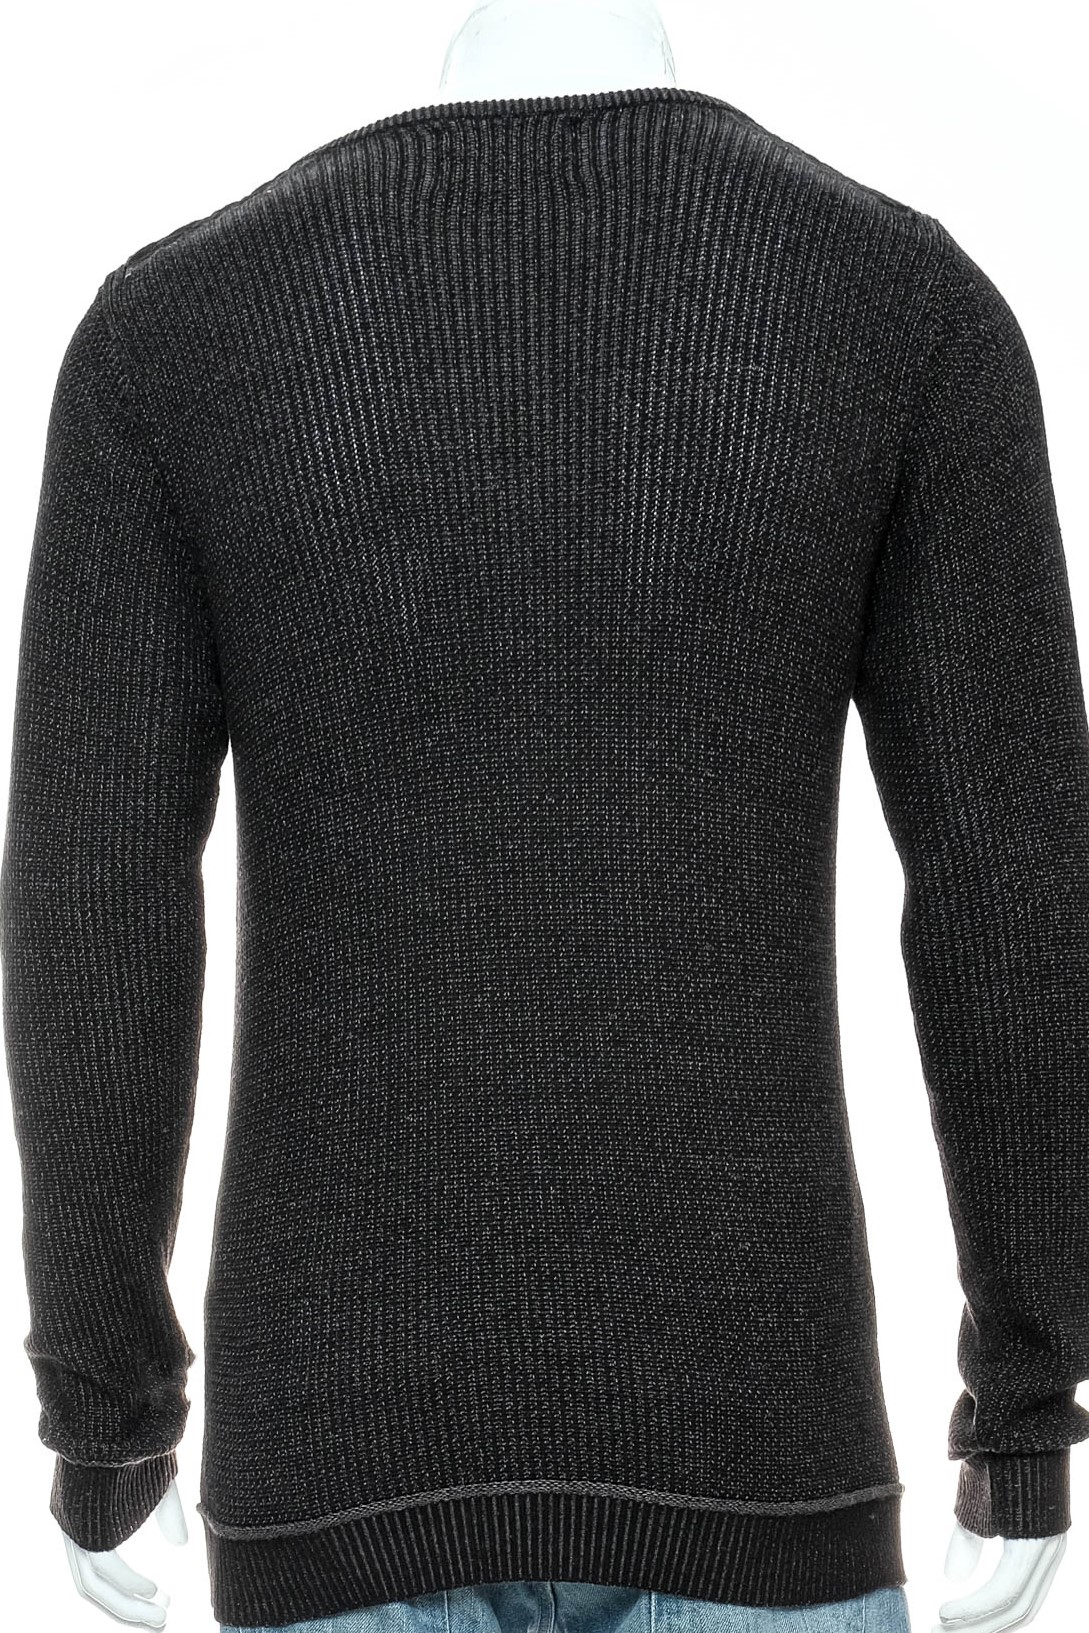 Men's sweater - INSITUX - 1